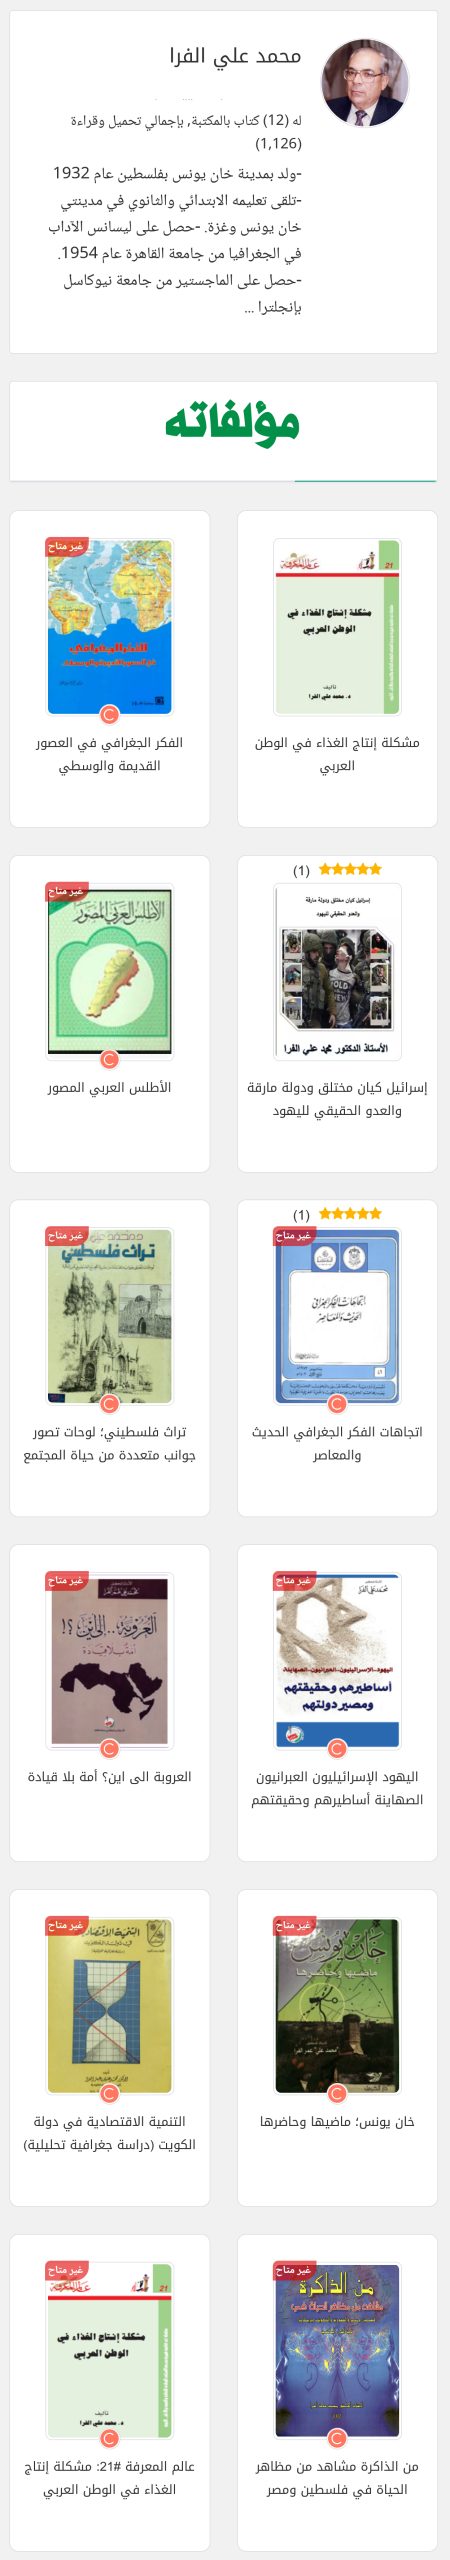 بعض من إصدارات الدكتور محمد علي الفرا - المصدر: (www.noor-book.com)